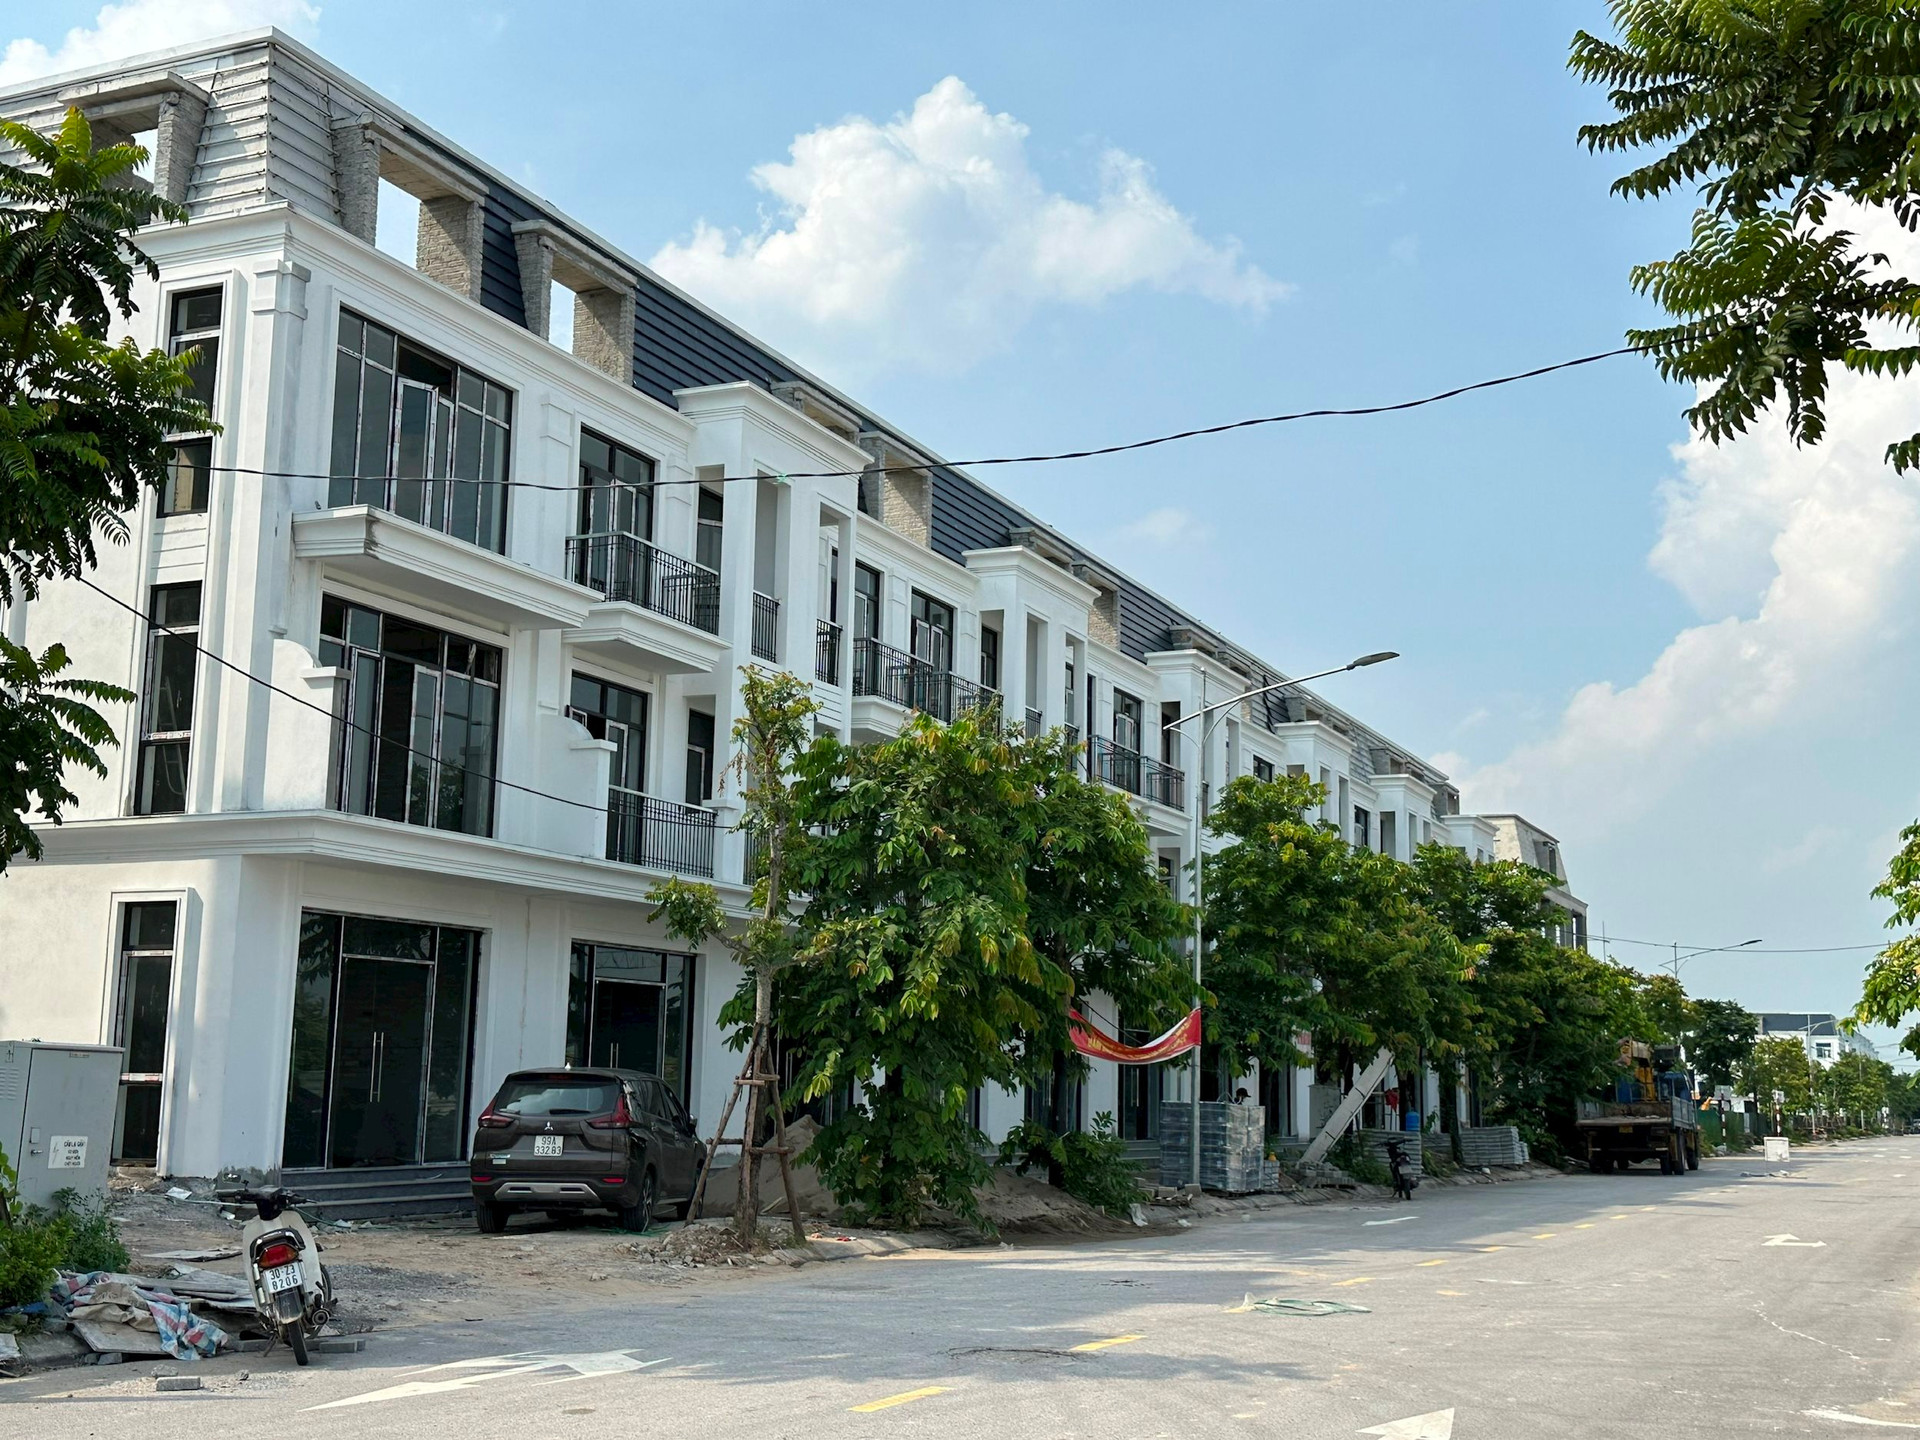 Tăng trưởng giá nhà tại Hà Nội cao gấp hơn 2 lần thu nhập của người dân - Ảnh 1.